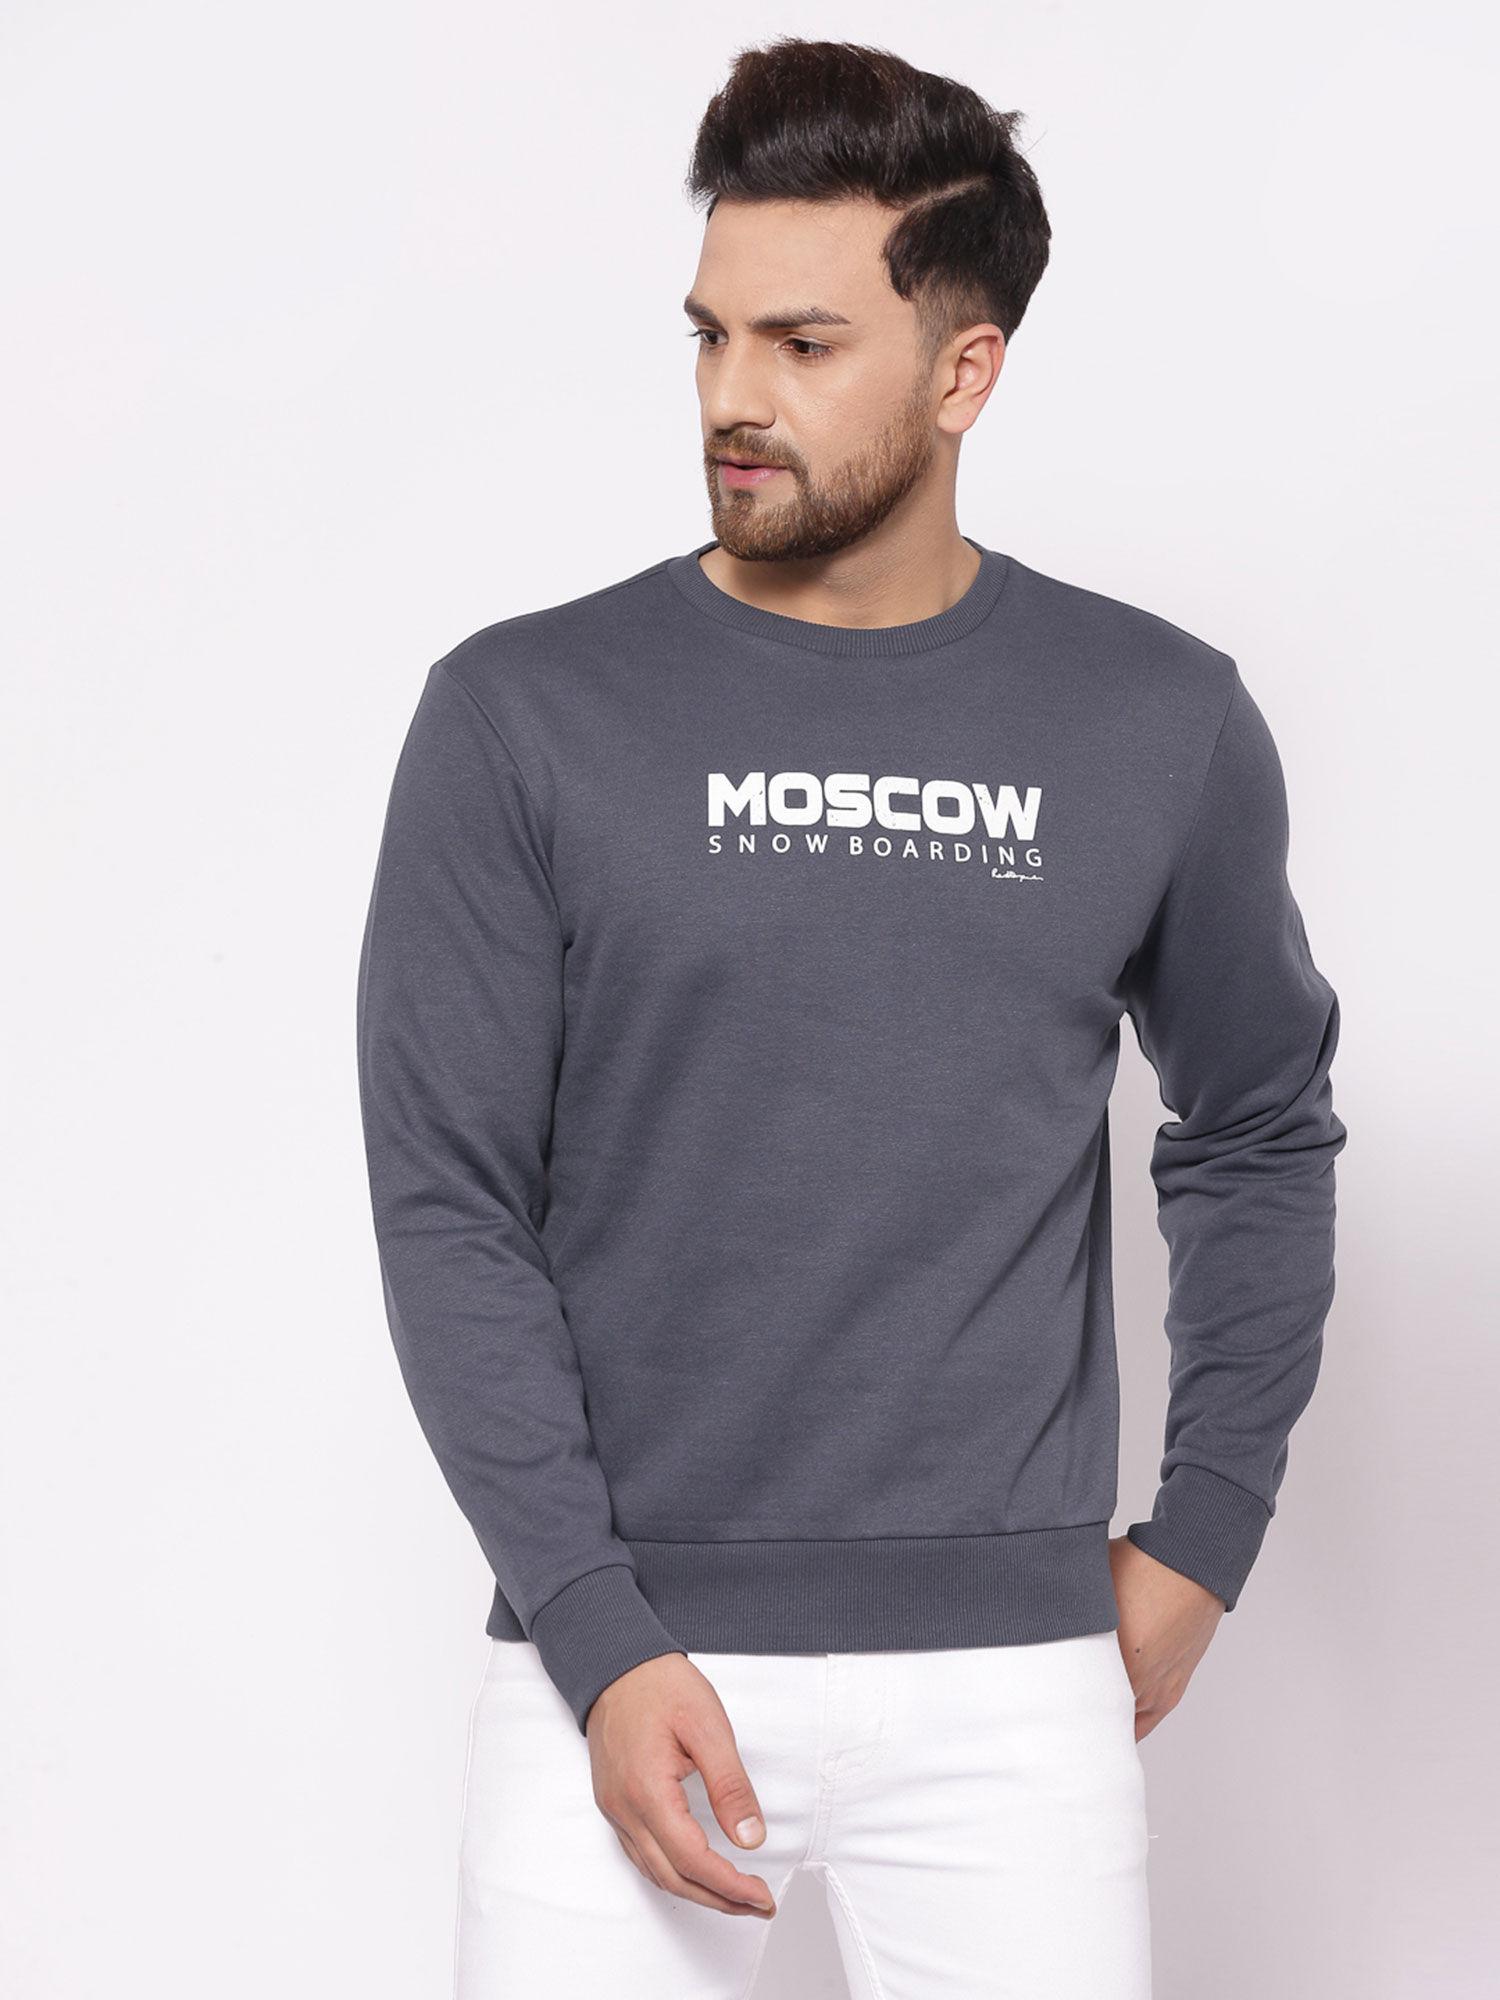 mens space grey sweatshirt